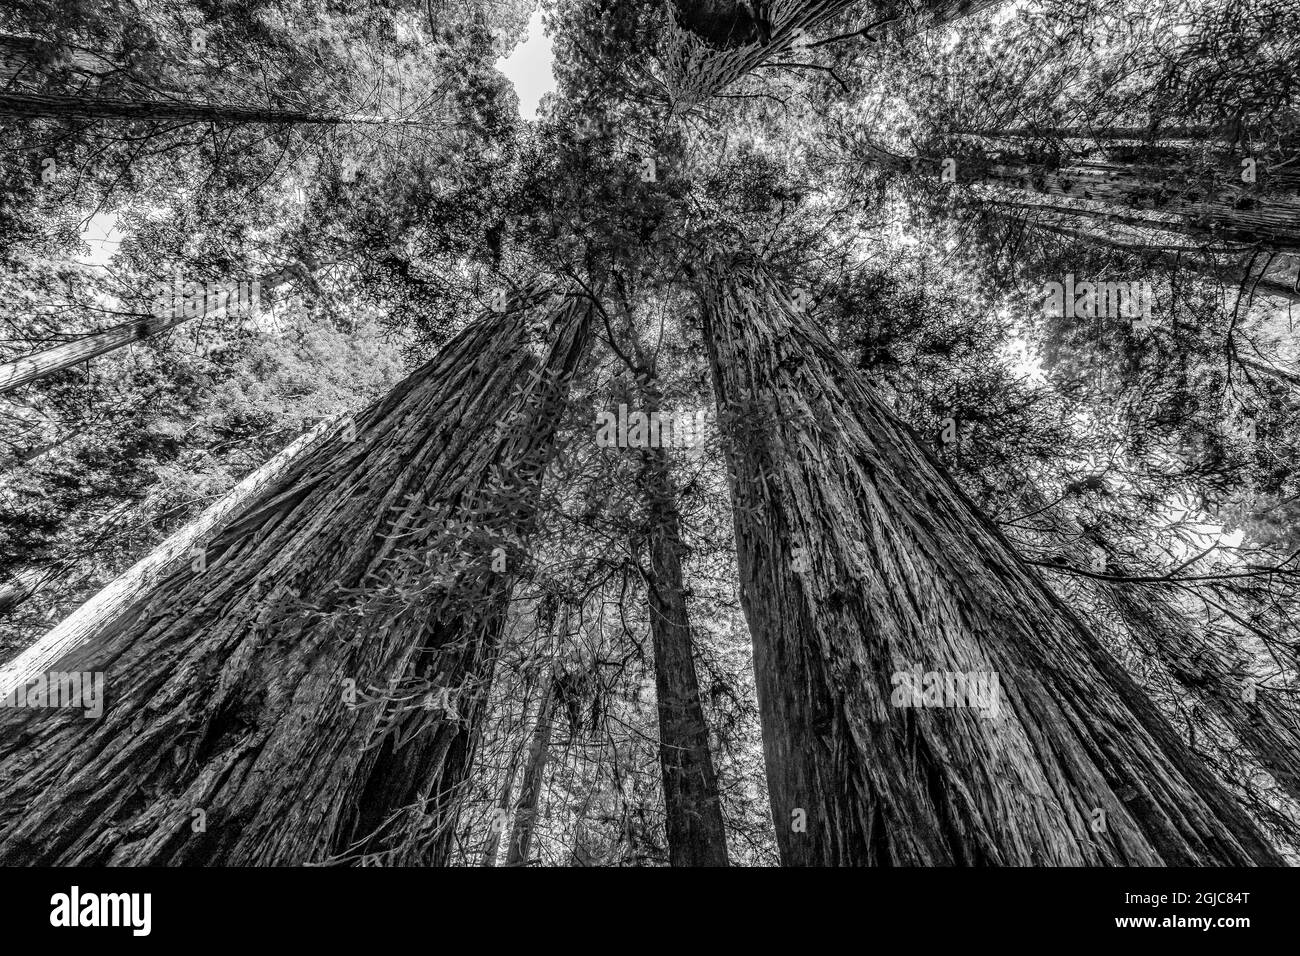 Grüner, hoch aufragender Baum, Redwoods National Park, Newton B Drury Drive, Crescent City, Kalifornien. Die höchsten Bäume der Welt, Tausende von Jahren alt. Stockfoto